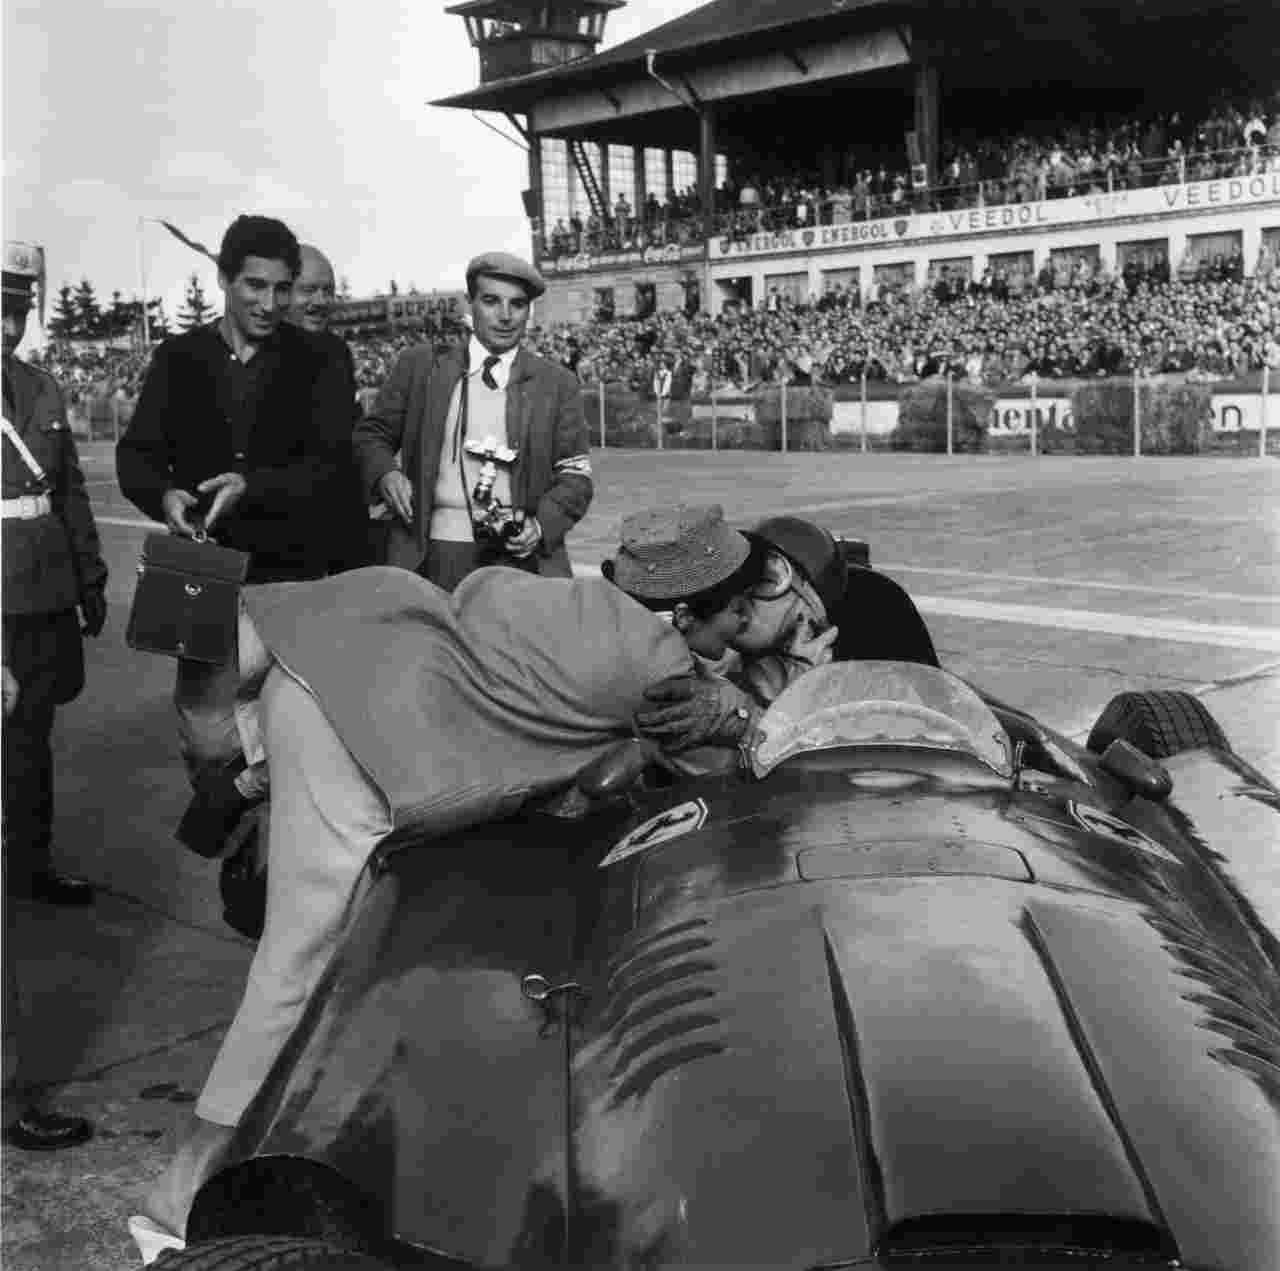 GP Nurburgring, l'impresa di Fangio